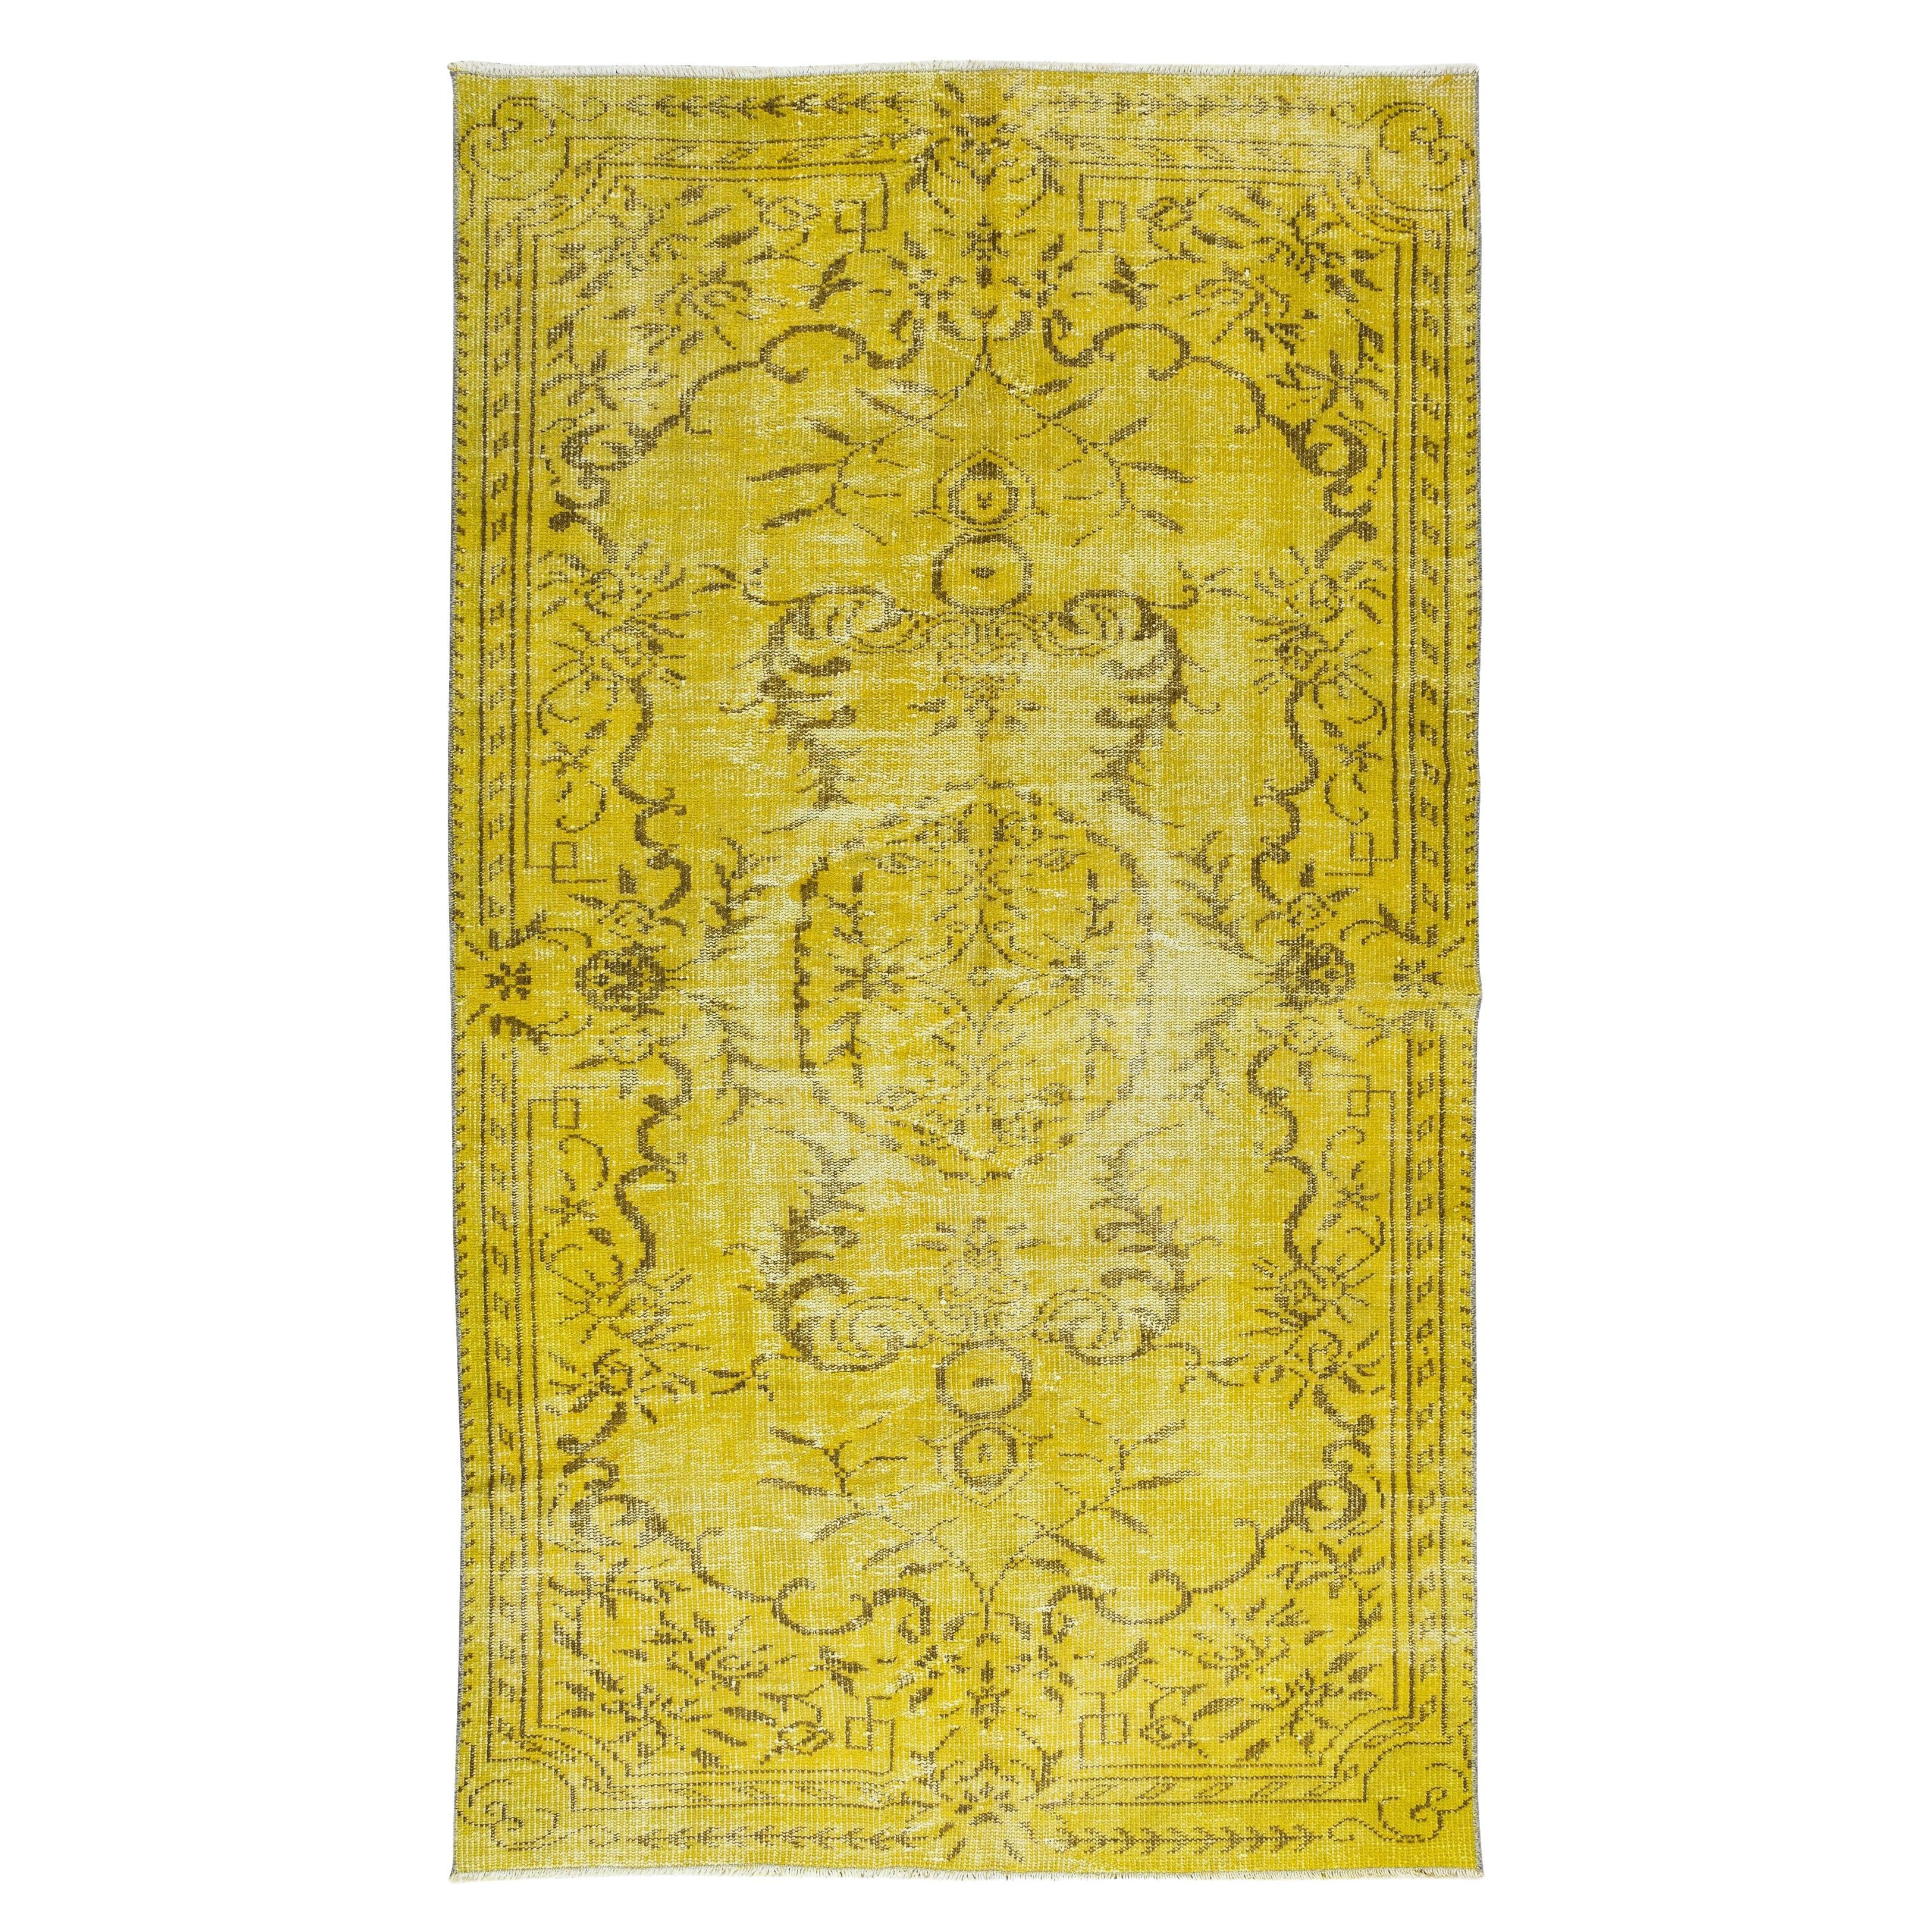 4.8x8.5 Ft Handmade Vintage Turkish Area Rug, Modern Yellow Carpet (tapis jaune moderne)